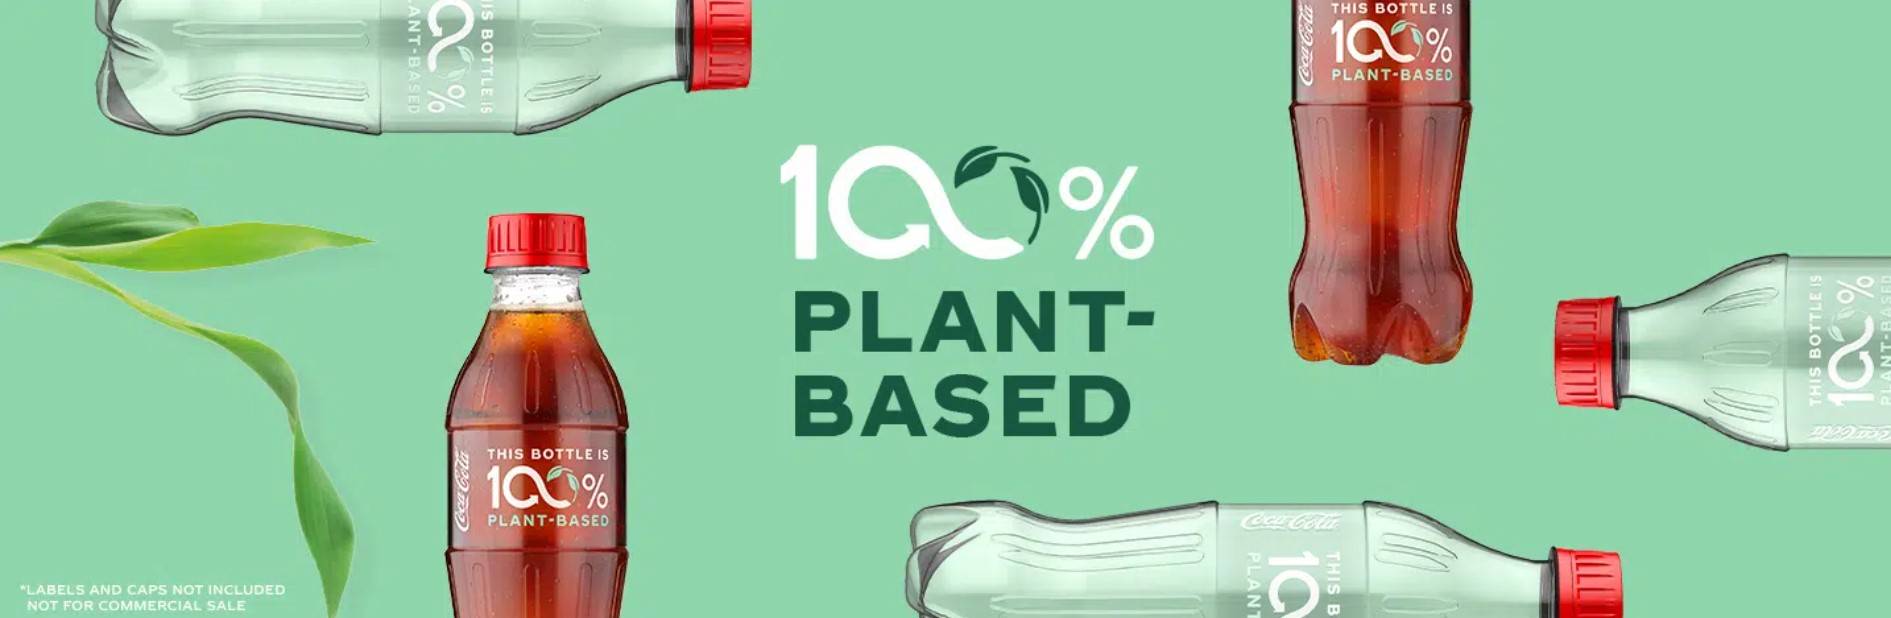 coca1 - Perché Coca-Cola, che ha lanciato bottiglie a base vegetale, è diventata il più grande “inquinatore di plastica” al mondo per quattro anni consecutivi?